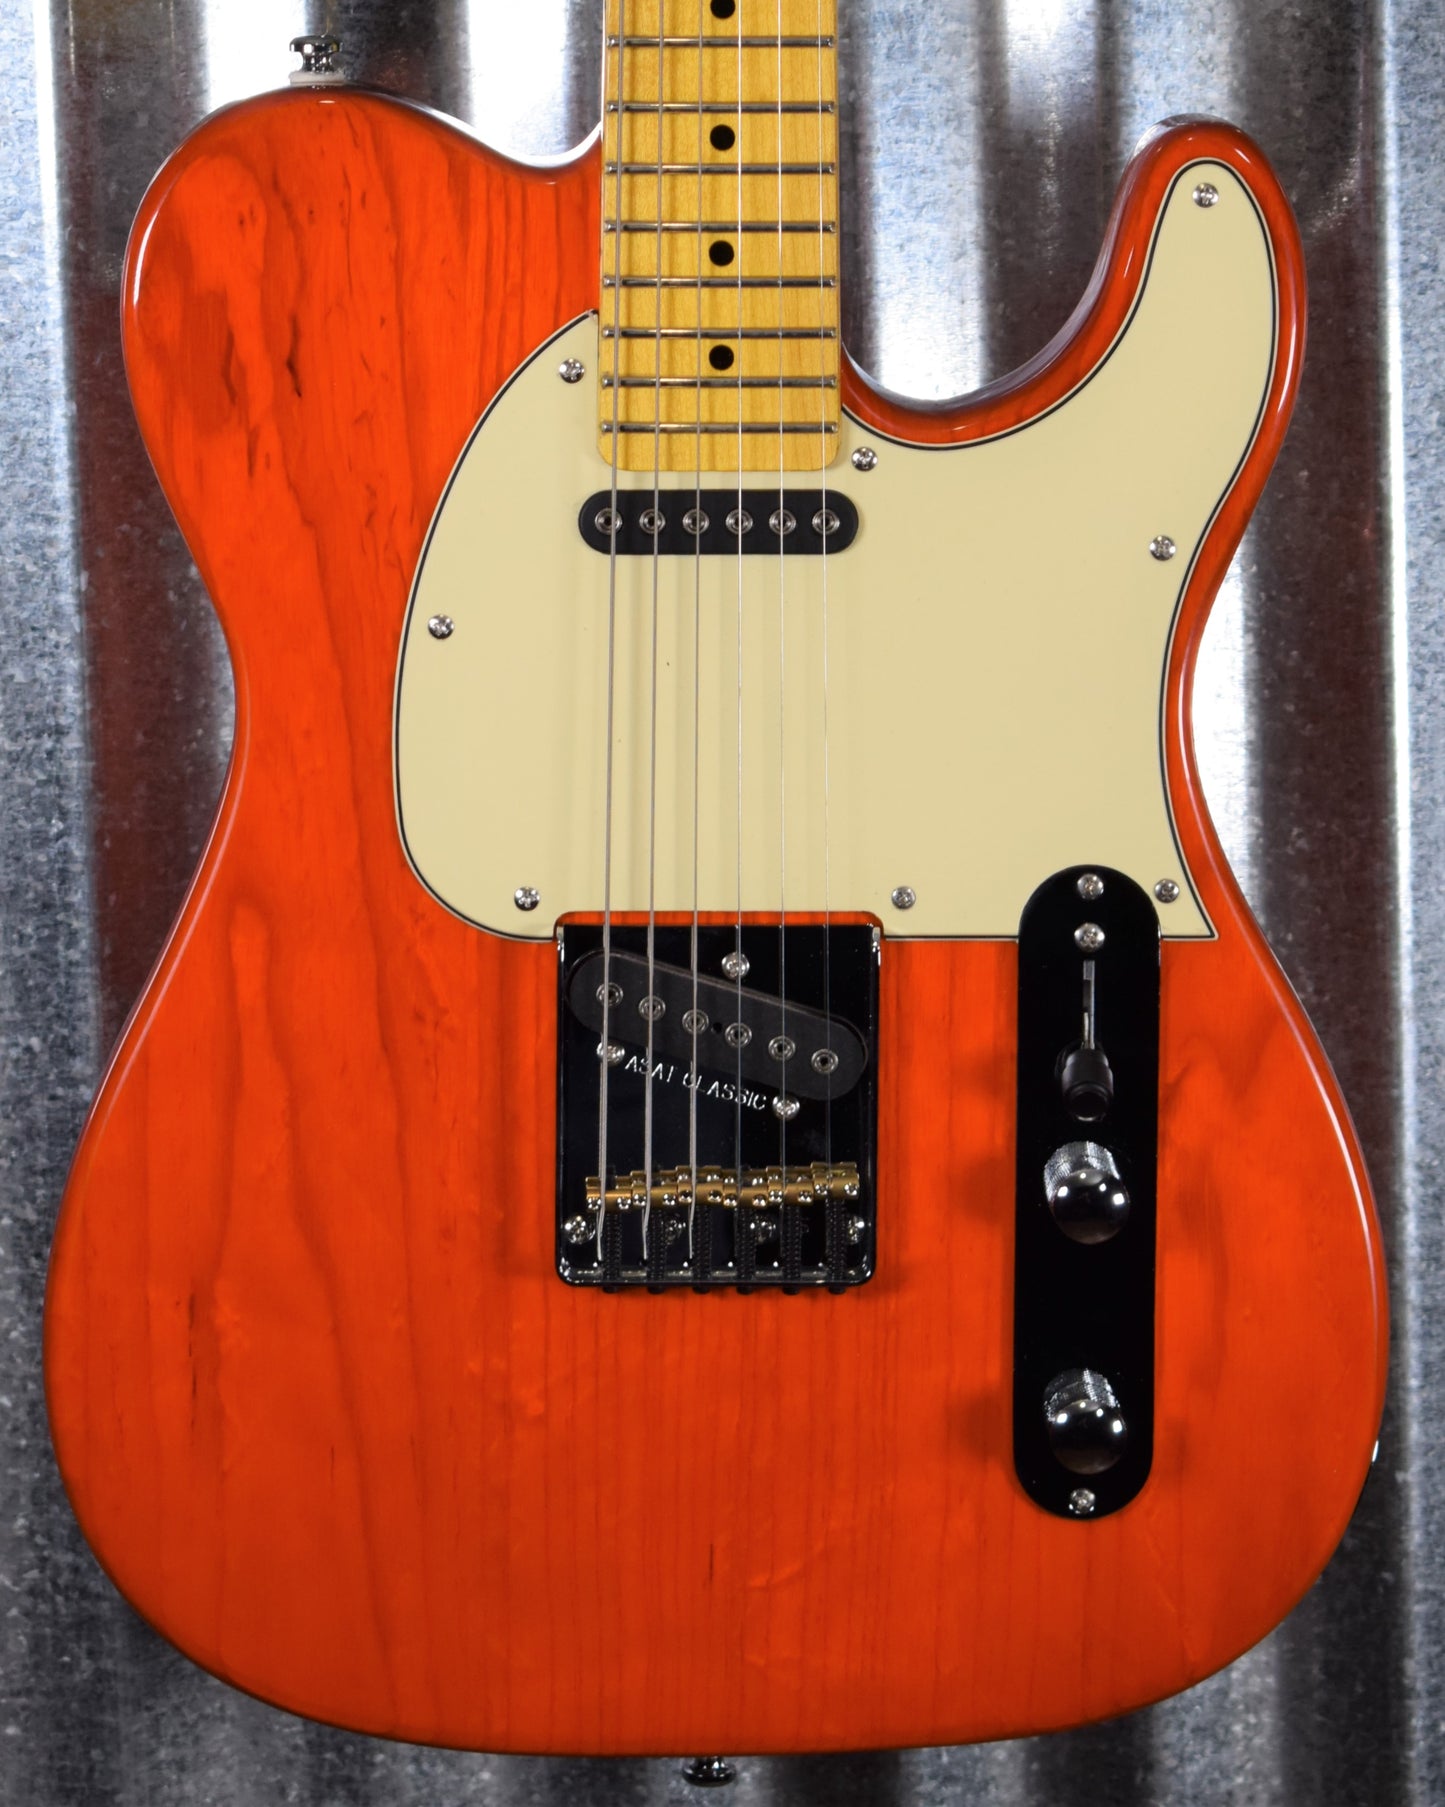 G&L Tribute ASAT Classic Clear Orange Guitar #2722 Demo